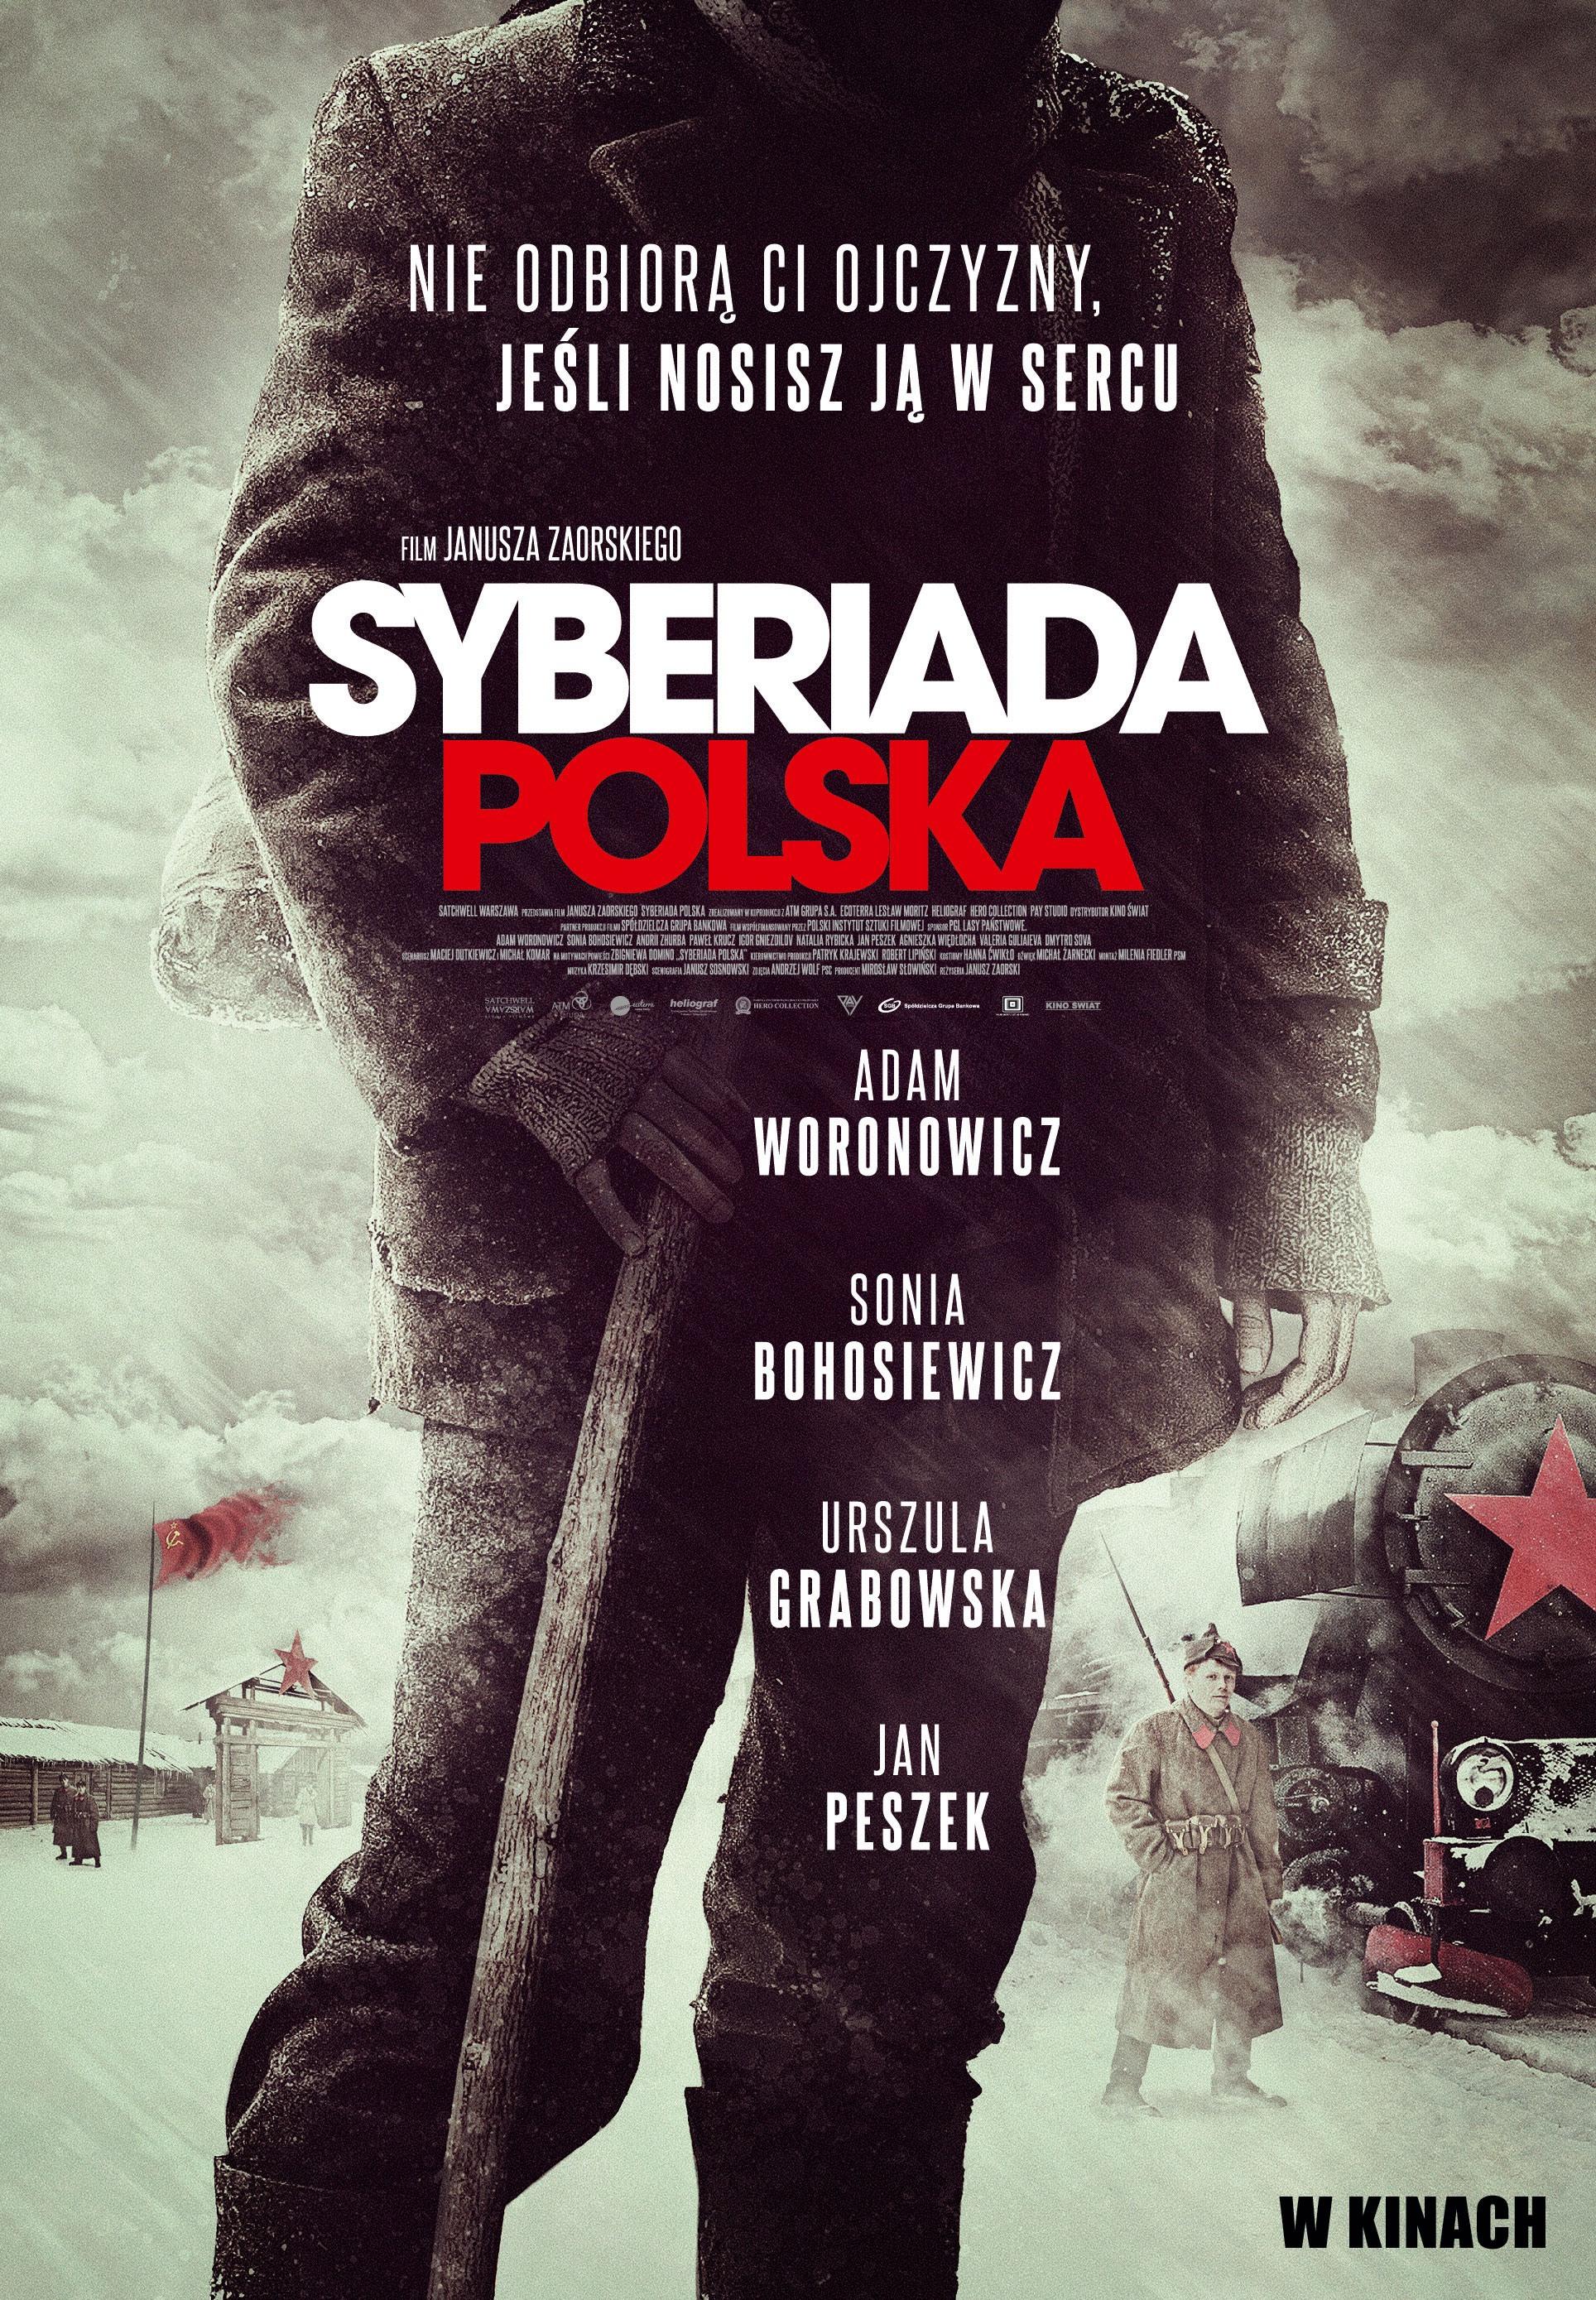 Постер фильма Польская сибириада | Syberiada polska